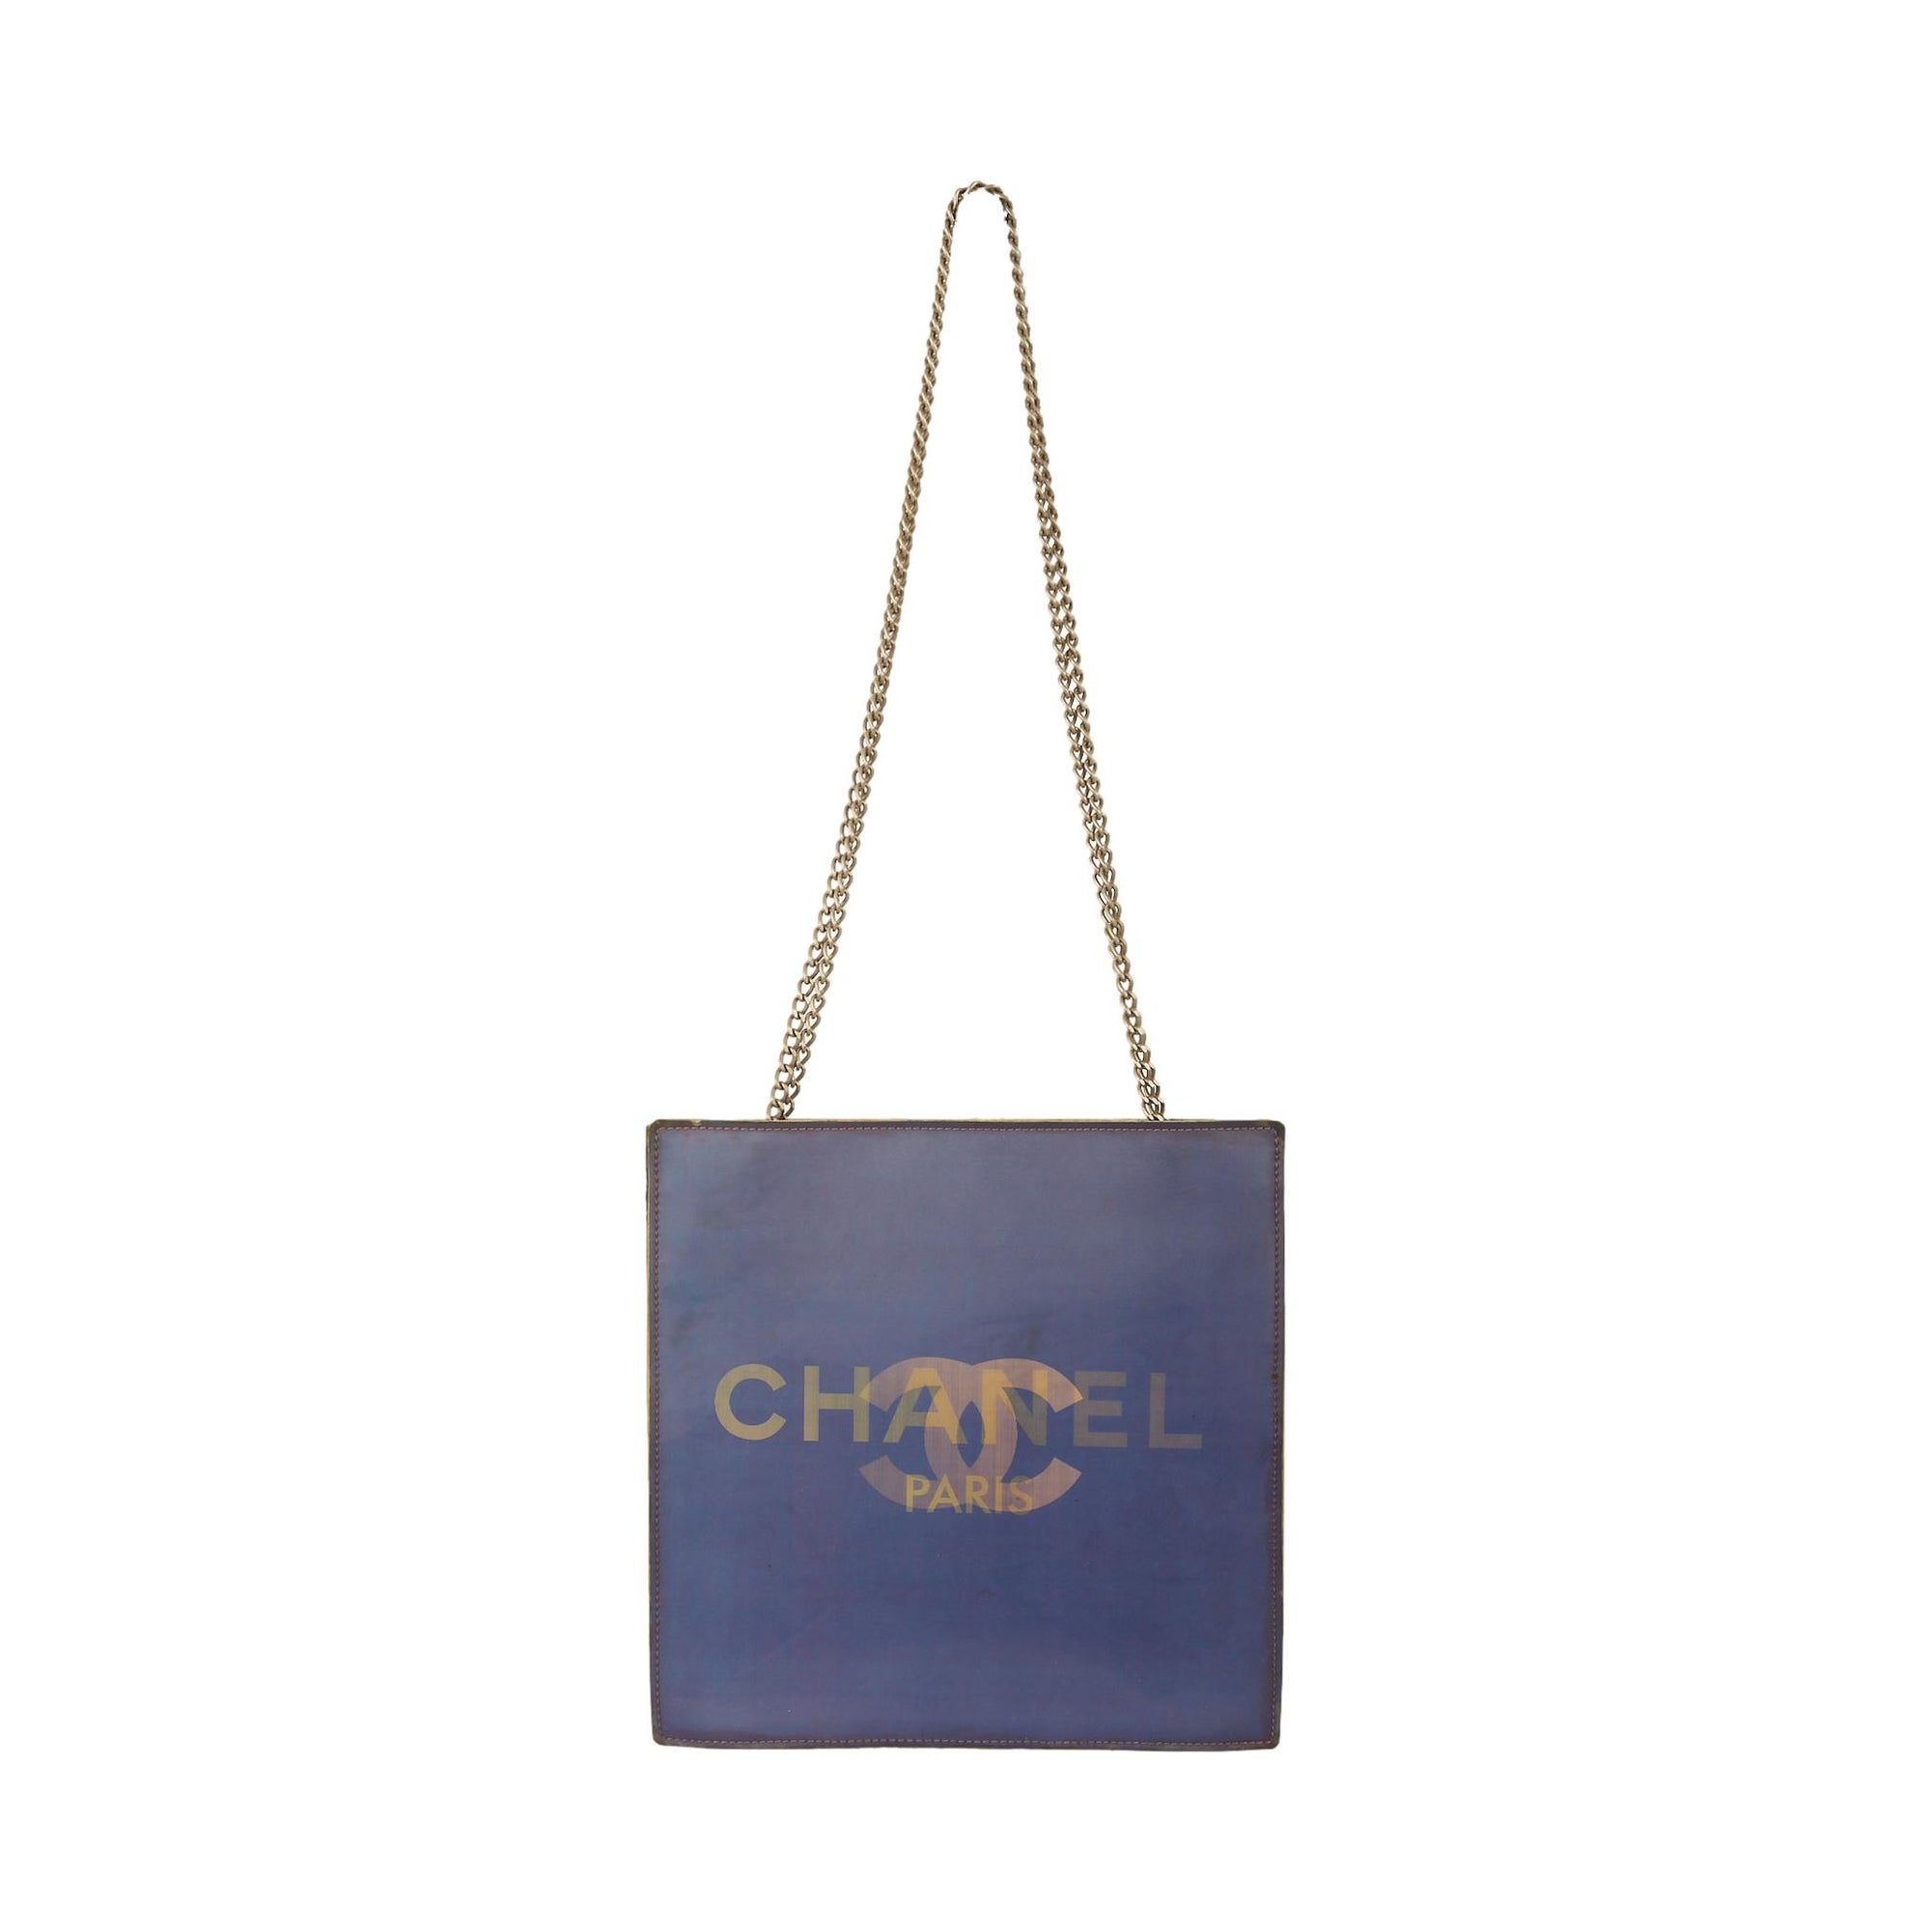 Chanel Vintage 1997 Triple CC Chain Strap Shoulder Bag